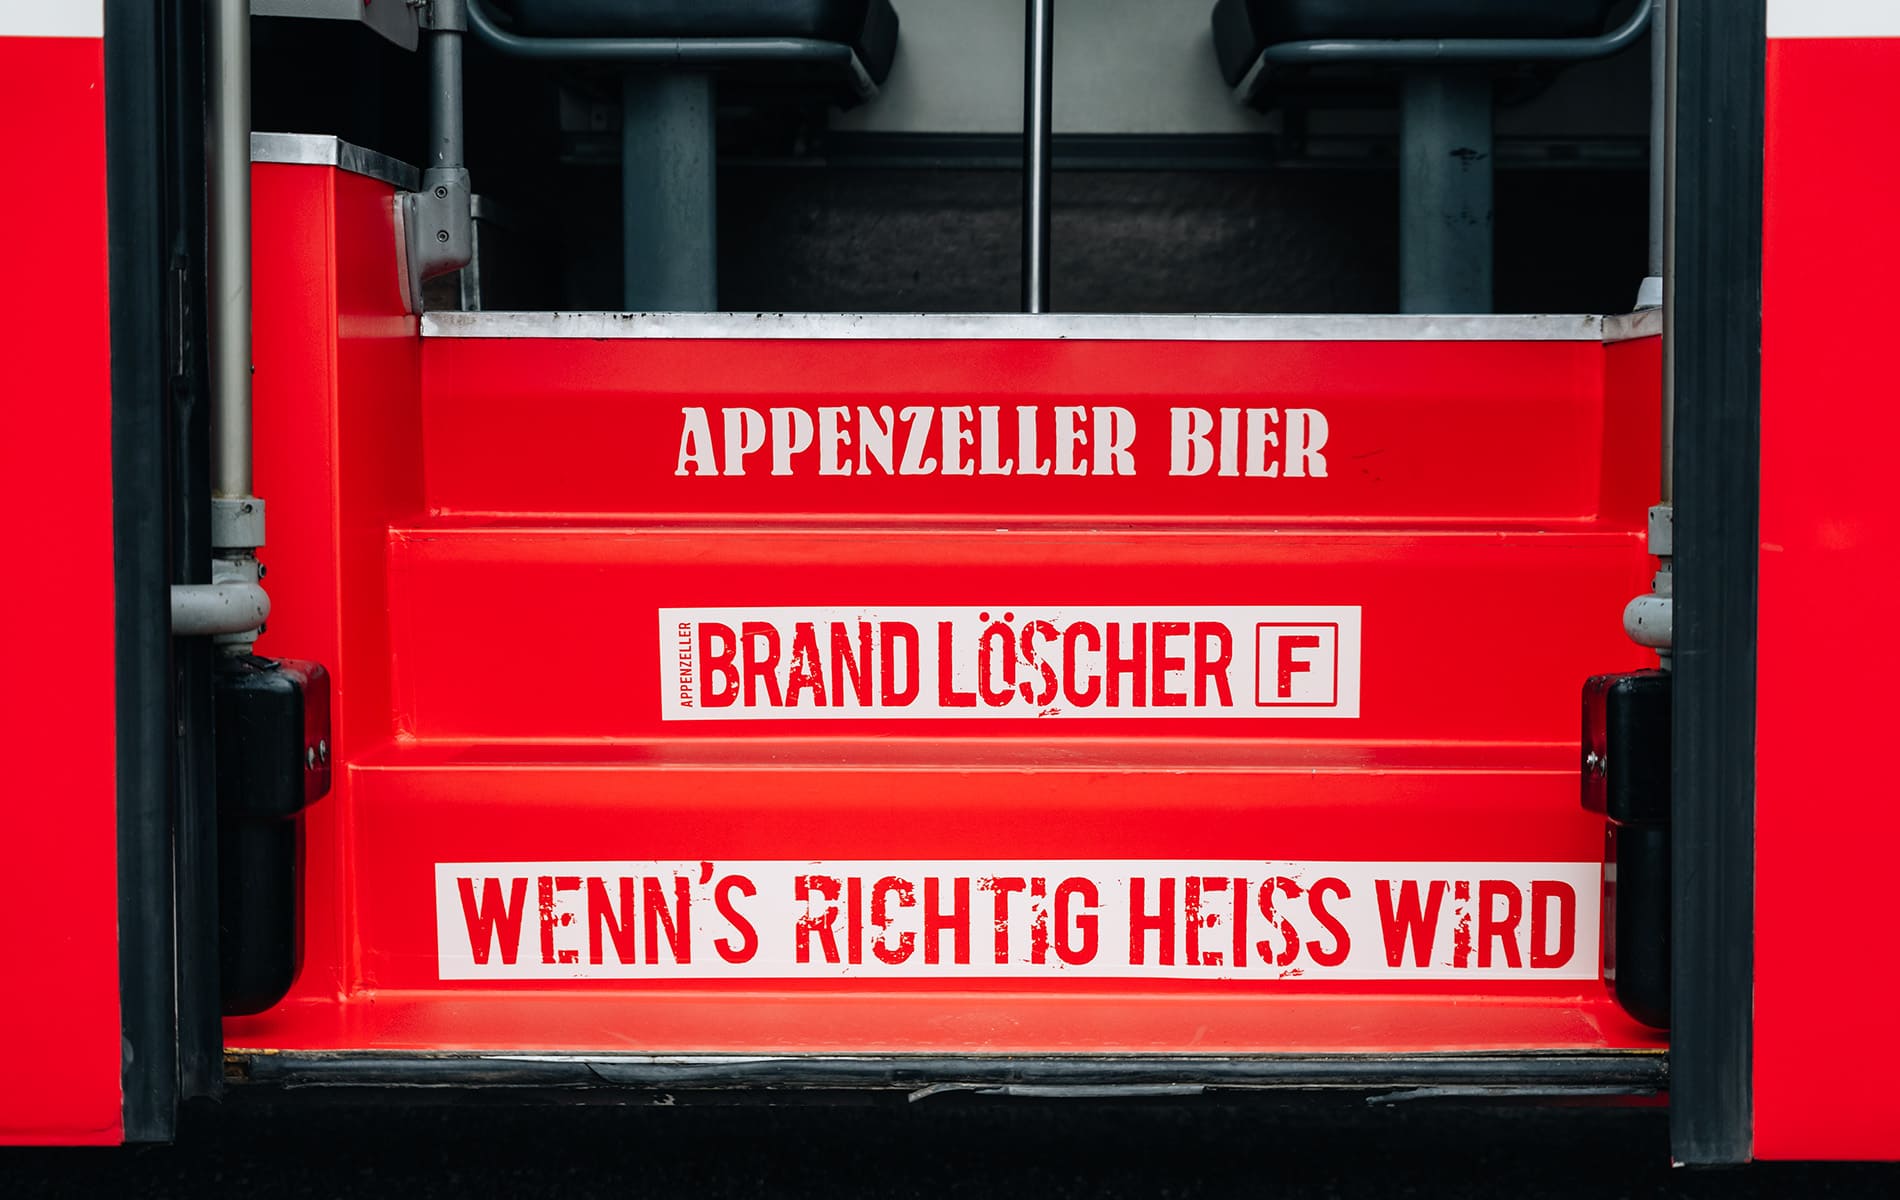 Brandloescher-Party-Bus-Treppen